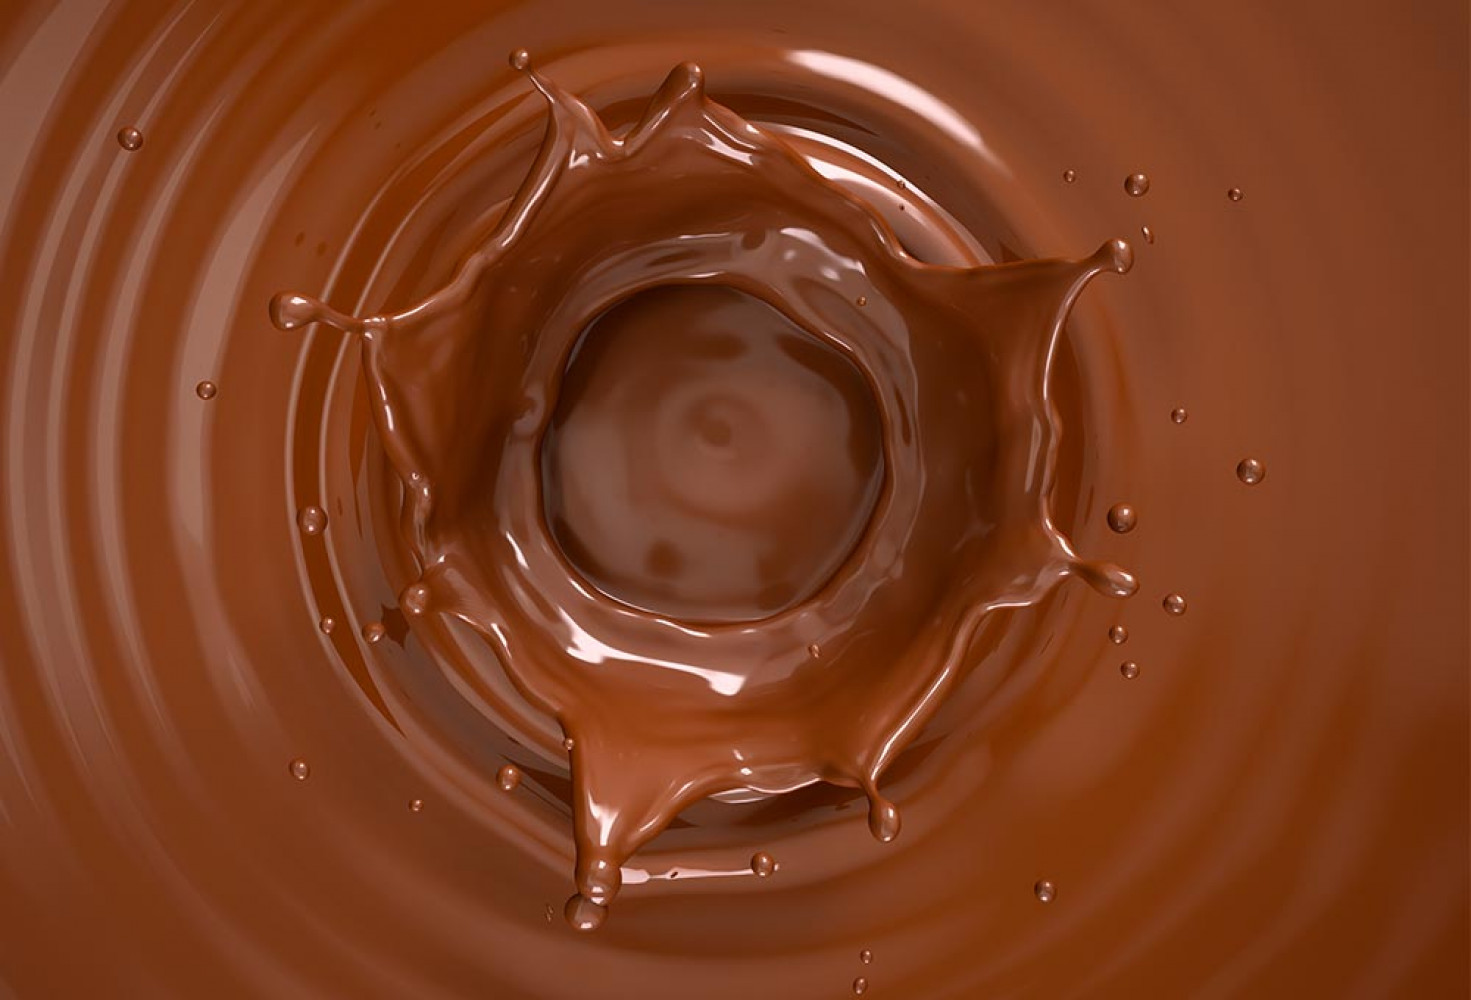 Çikolata hakkında 10 ilginç bilgi